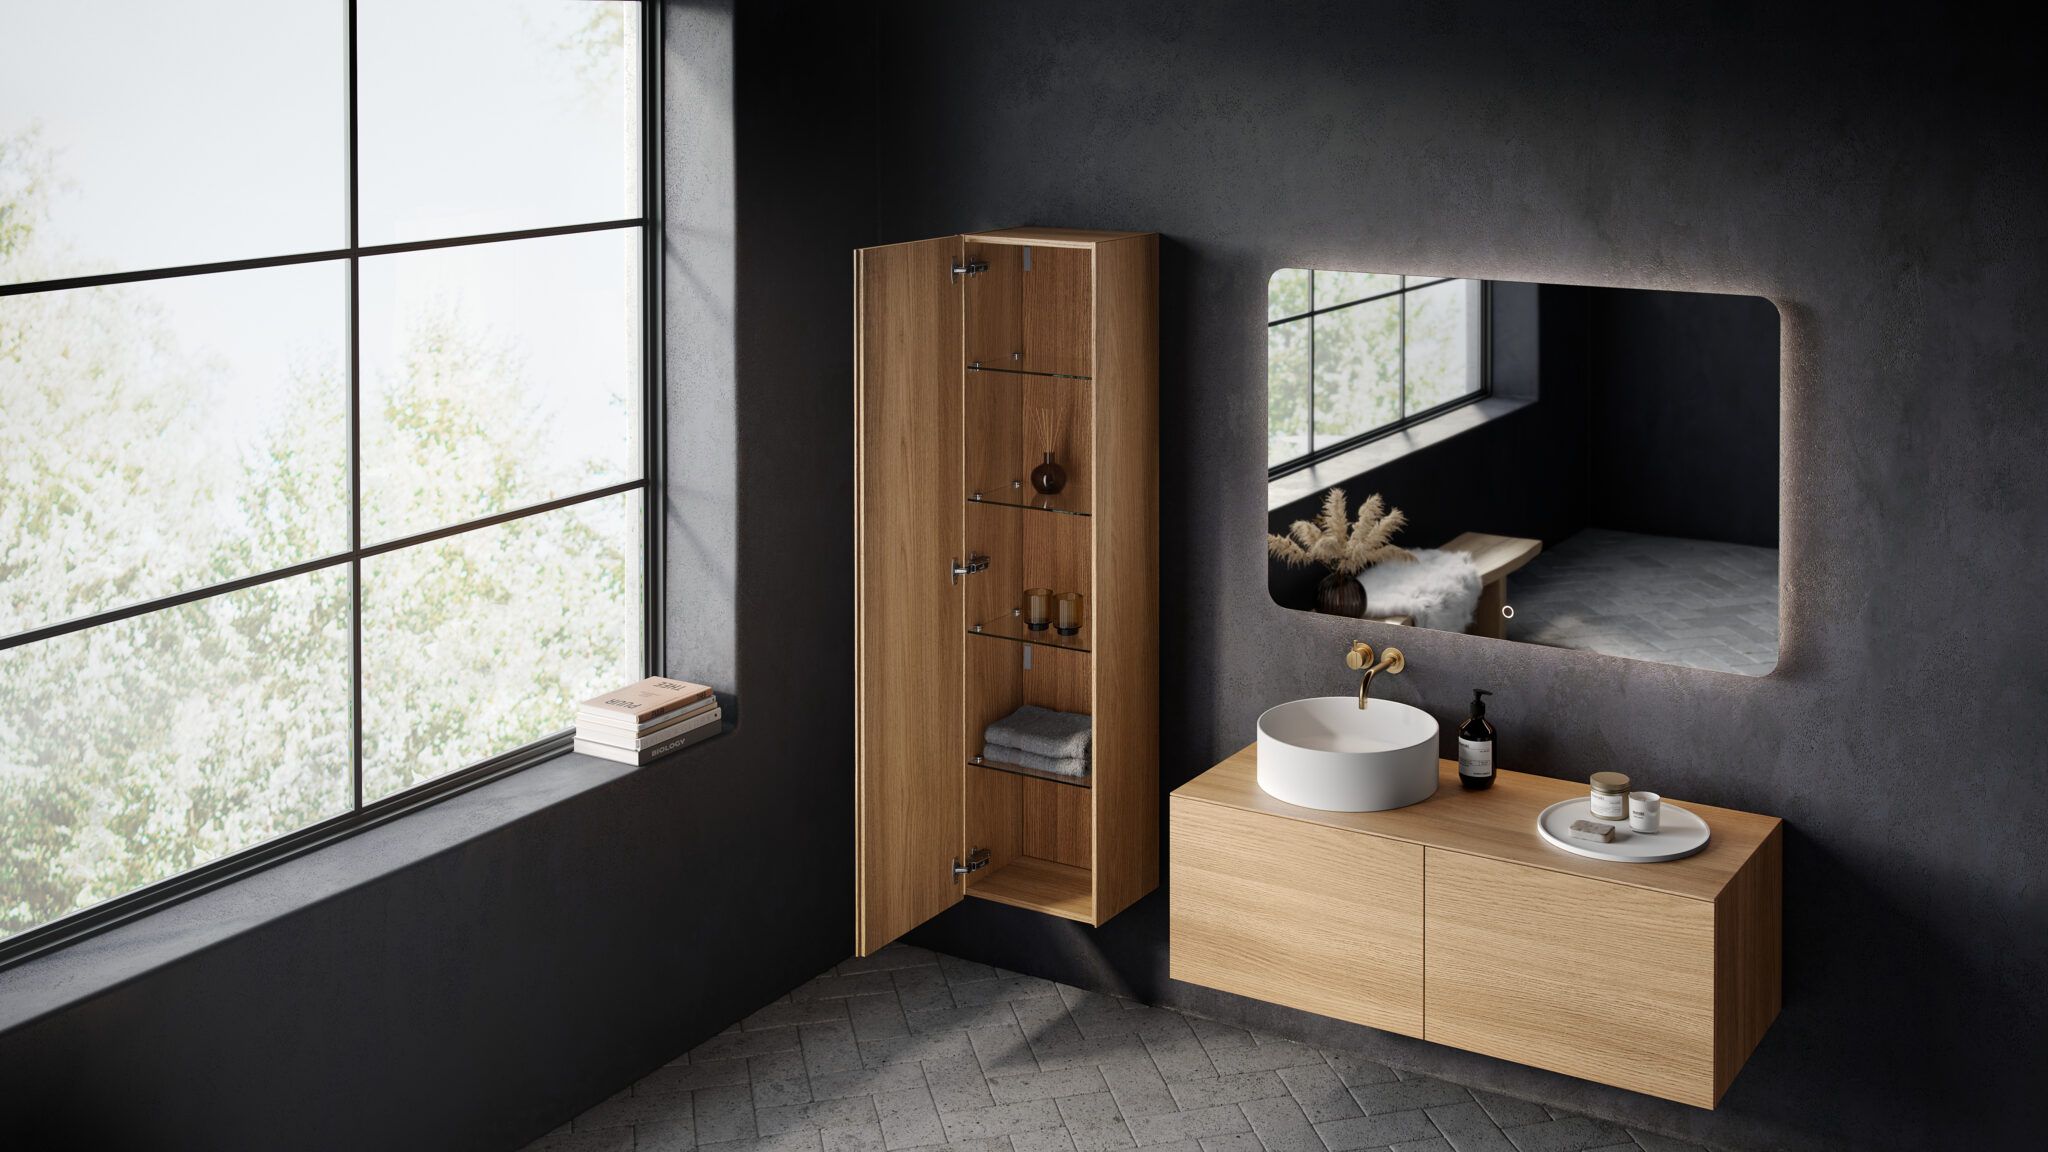 Copenhagen bath moderne skandinavisk design for moderne bad med japandi inspirasjon. Her vises Bergen høyskap i lys eik